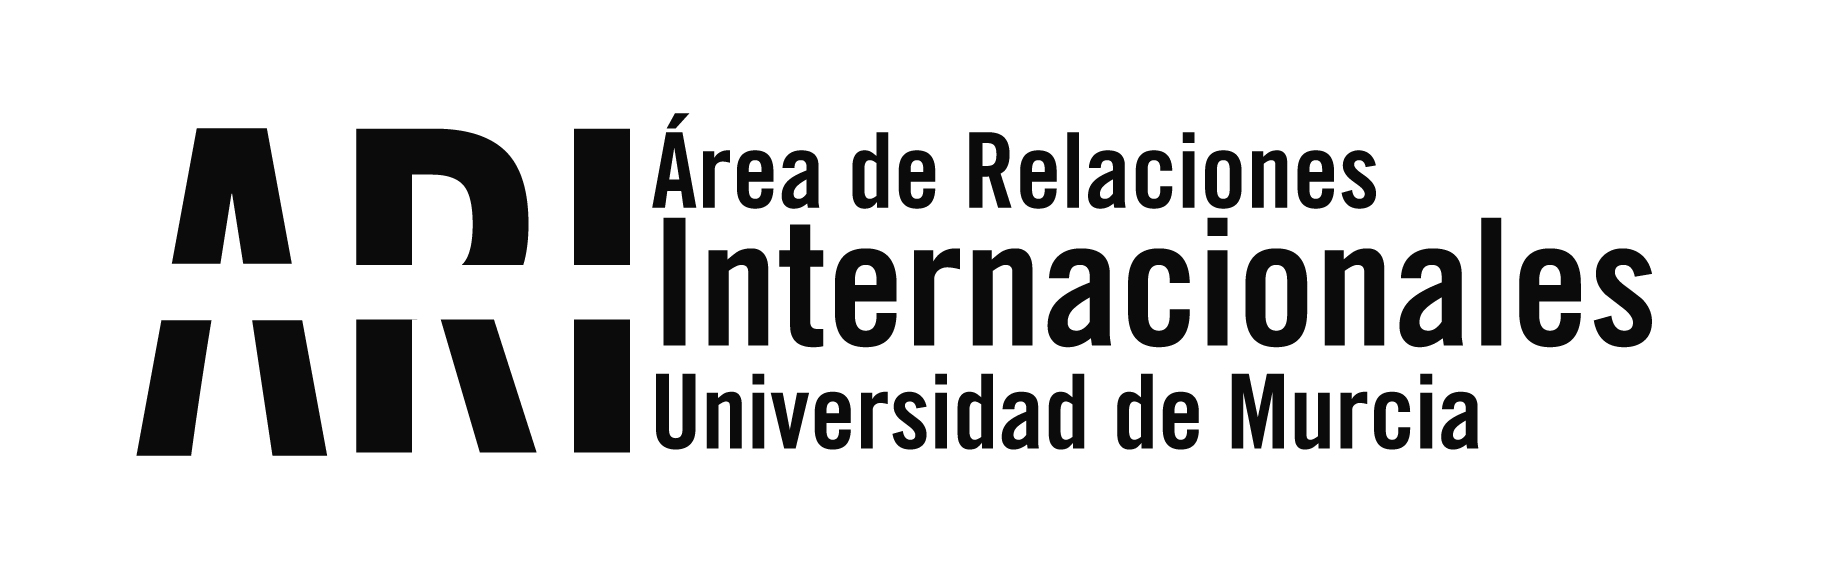 Convocatoria de lectores de lengua extranjera en la Universidad de Murcia - Área de Relaciones Internacionales